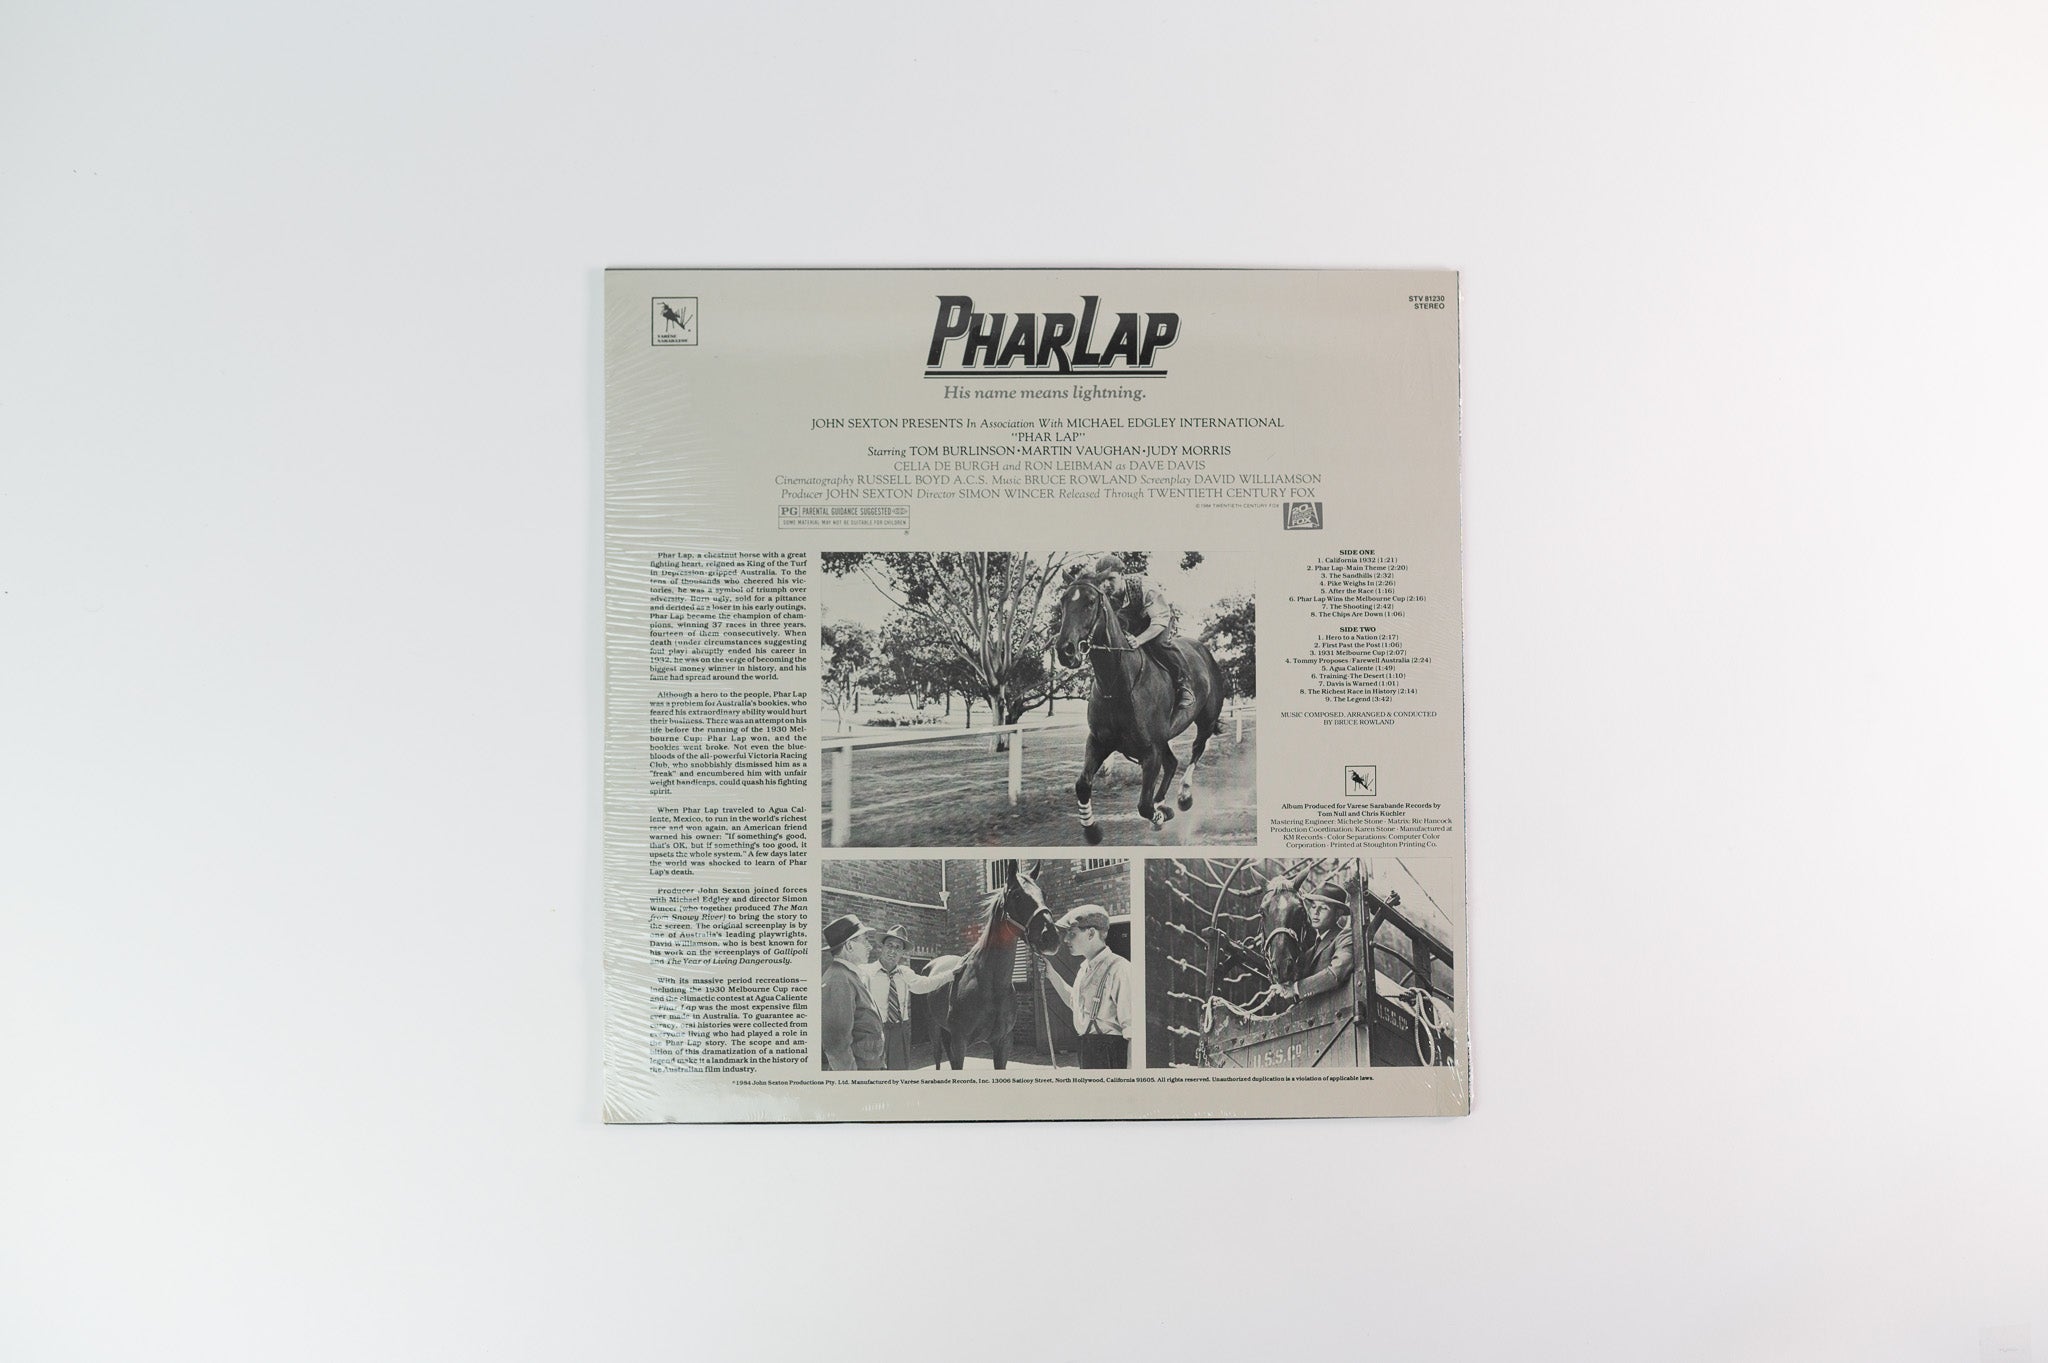 Bruce Rowland - Phar Lap (Original Soundtrack) on Varese Sarabande Sealed